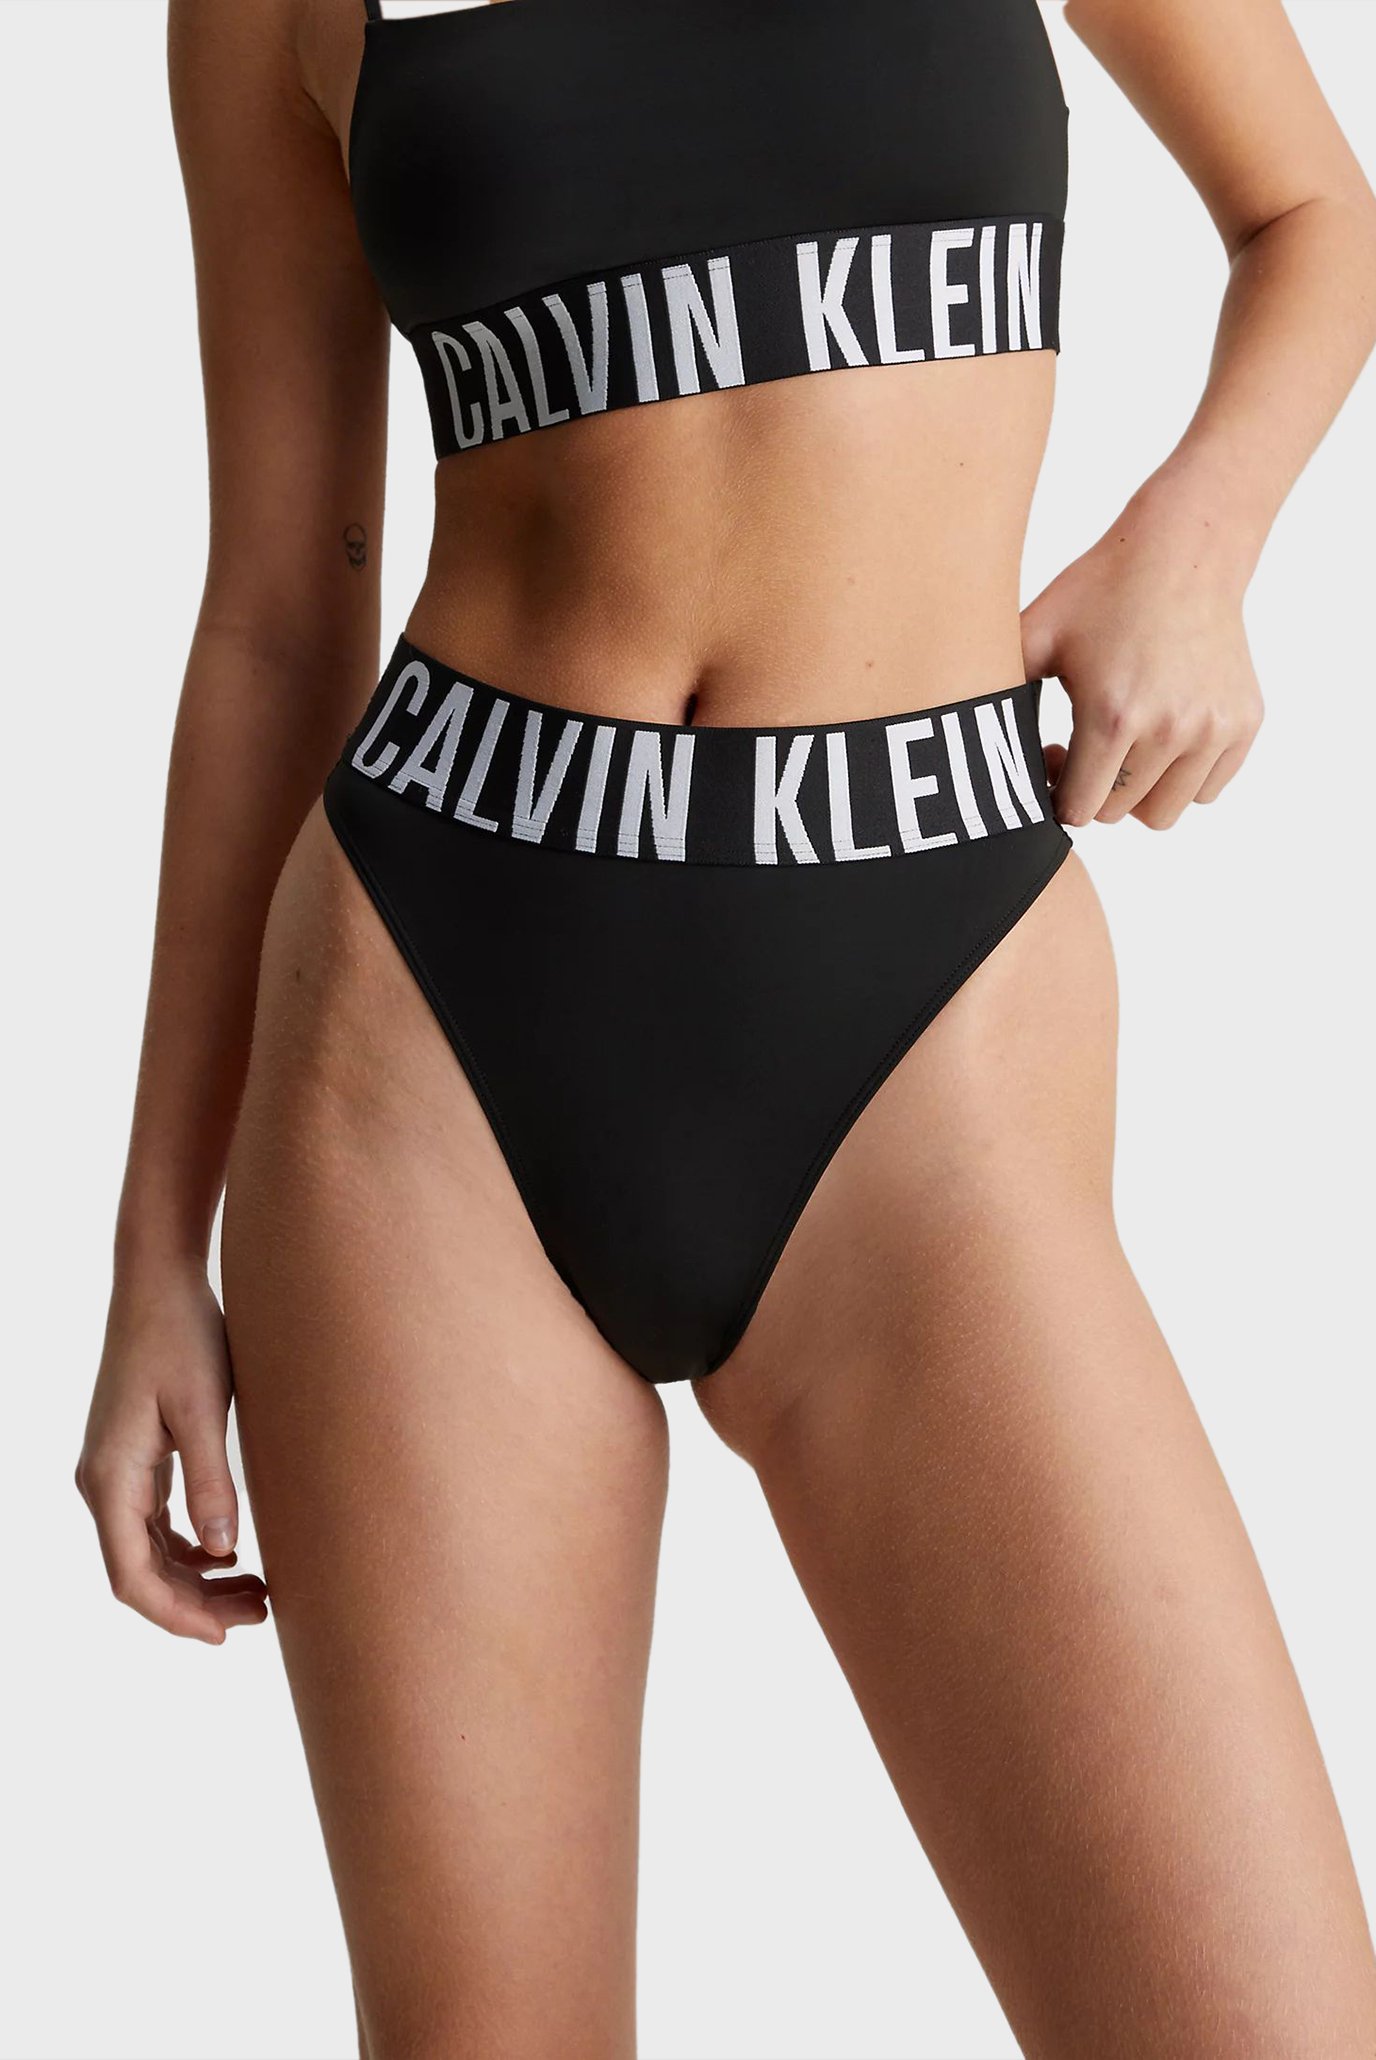 Женские трусы стринги Calvin Klein Women String Black - купить по